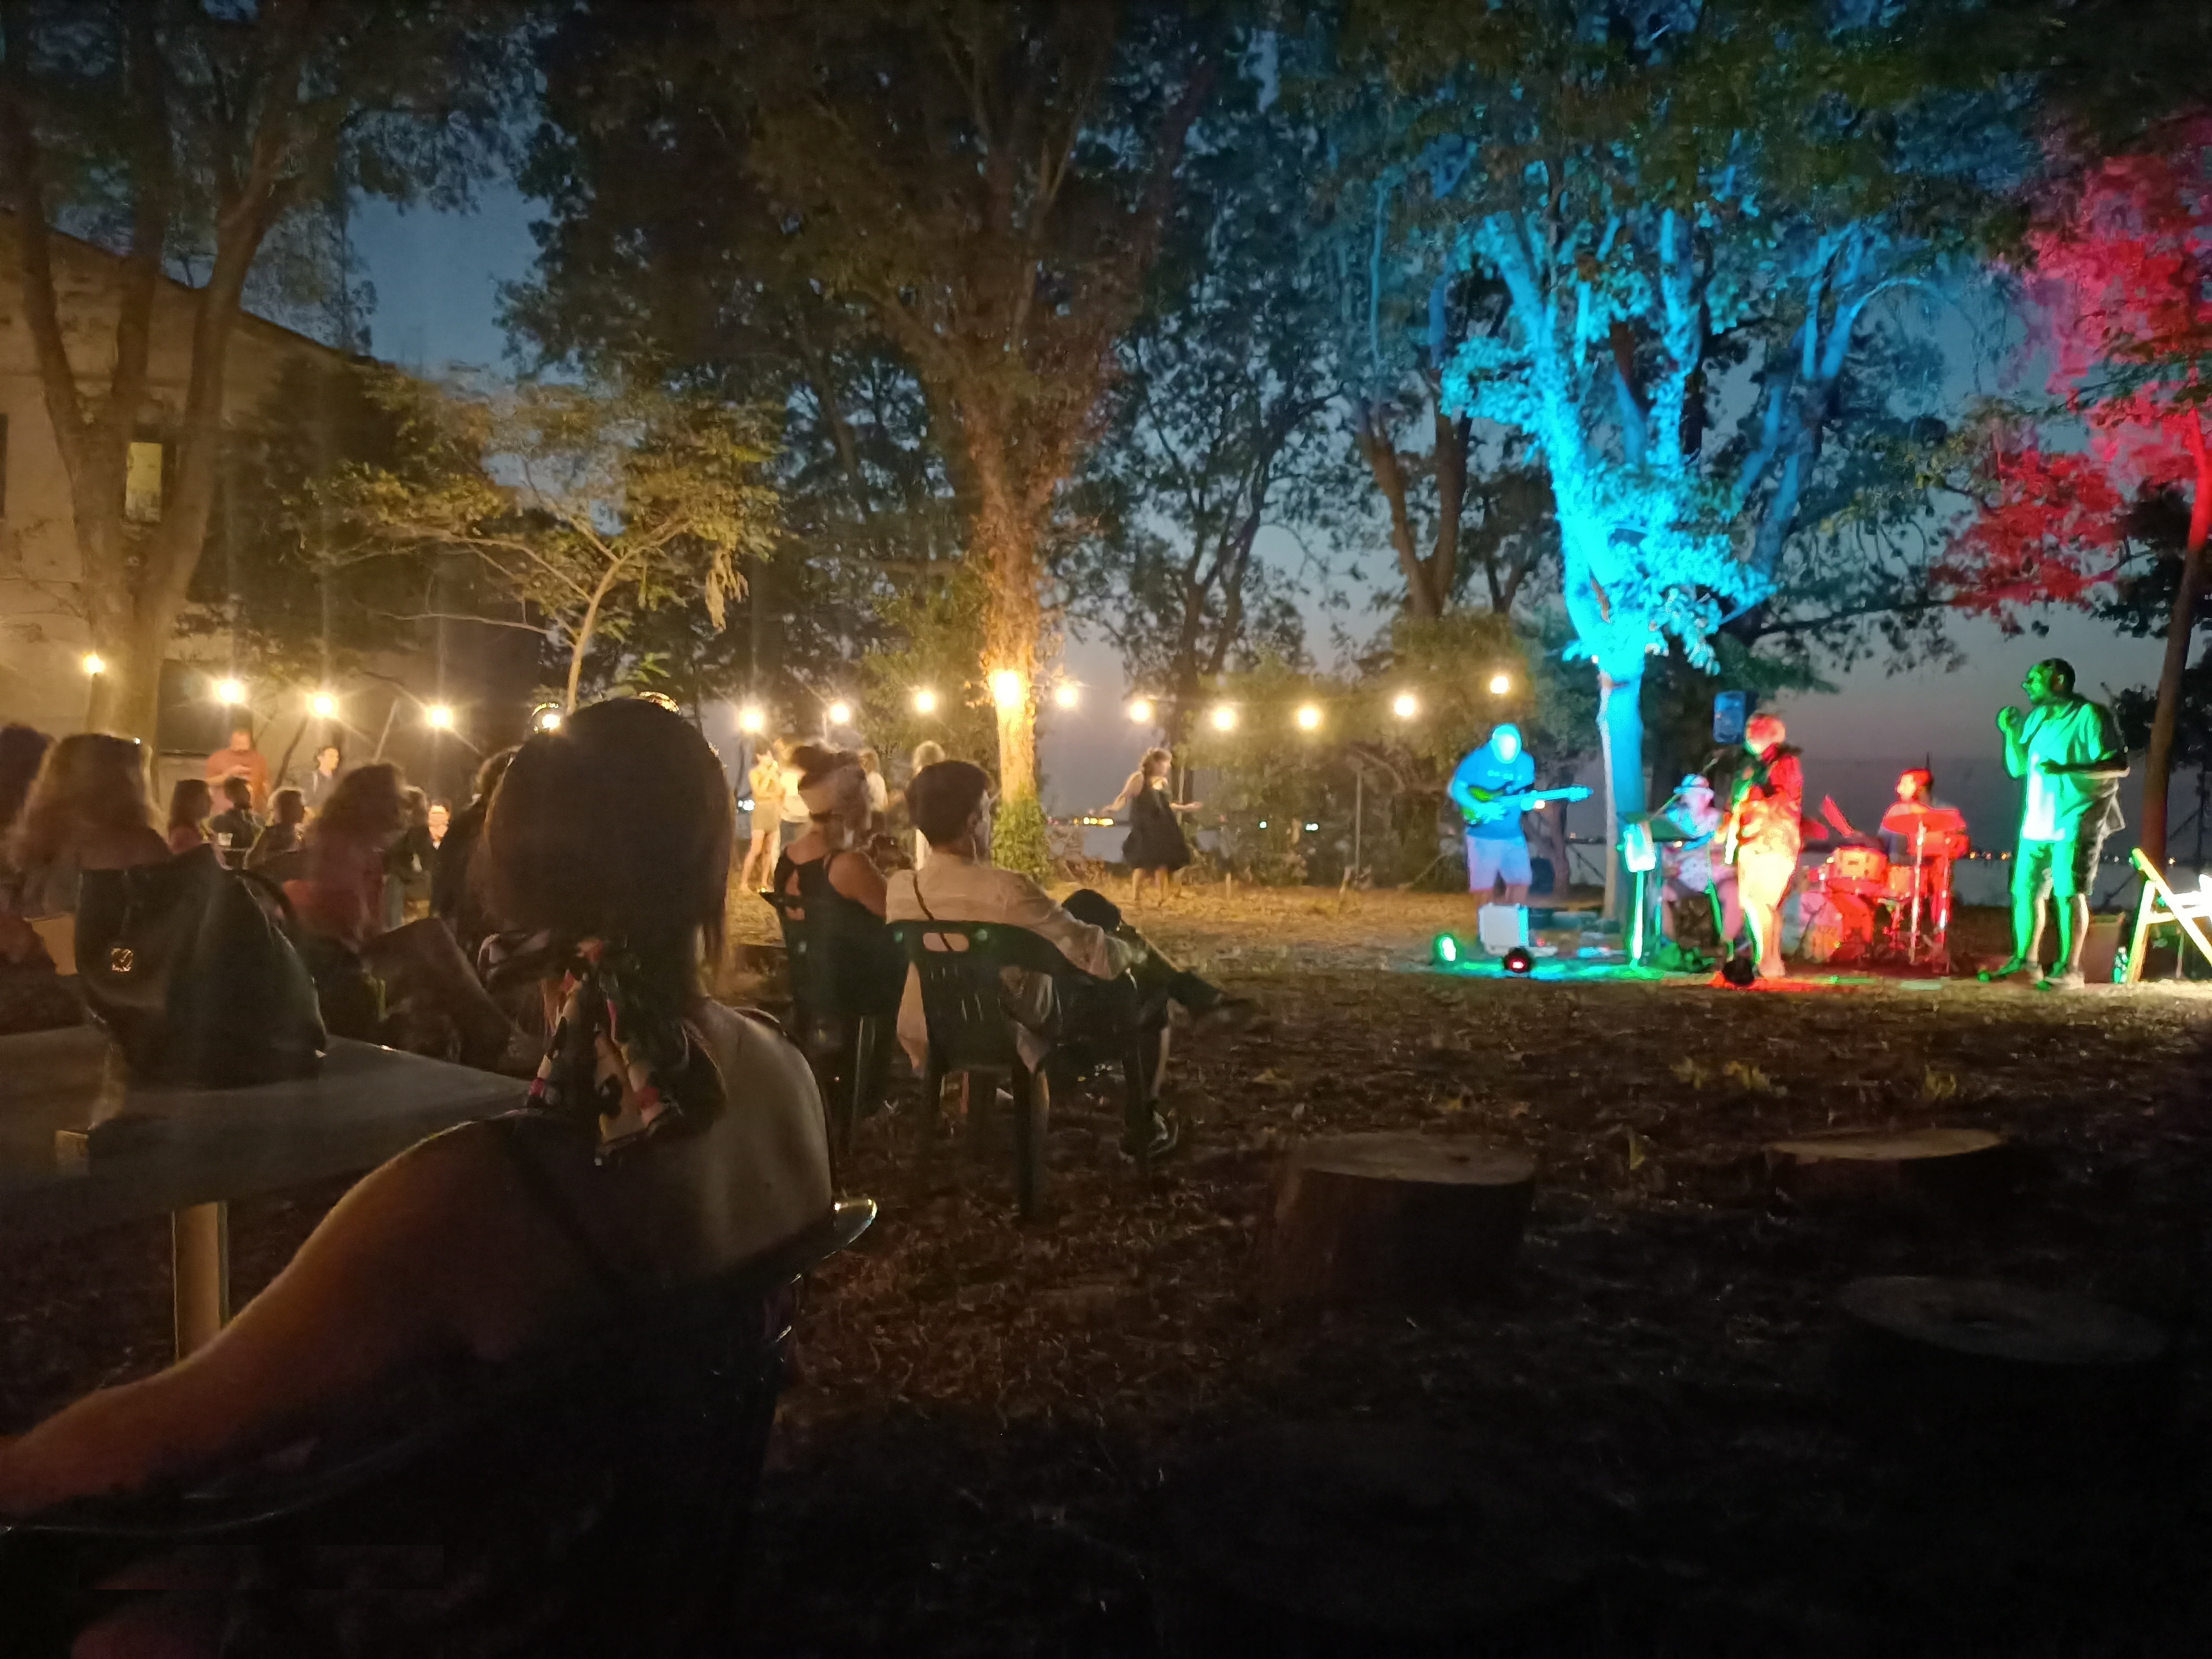 Gruppo musicale si esibisce di sera all'aperto in un parco di fronte a un pubblico seduto a tavolini